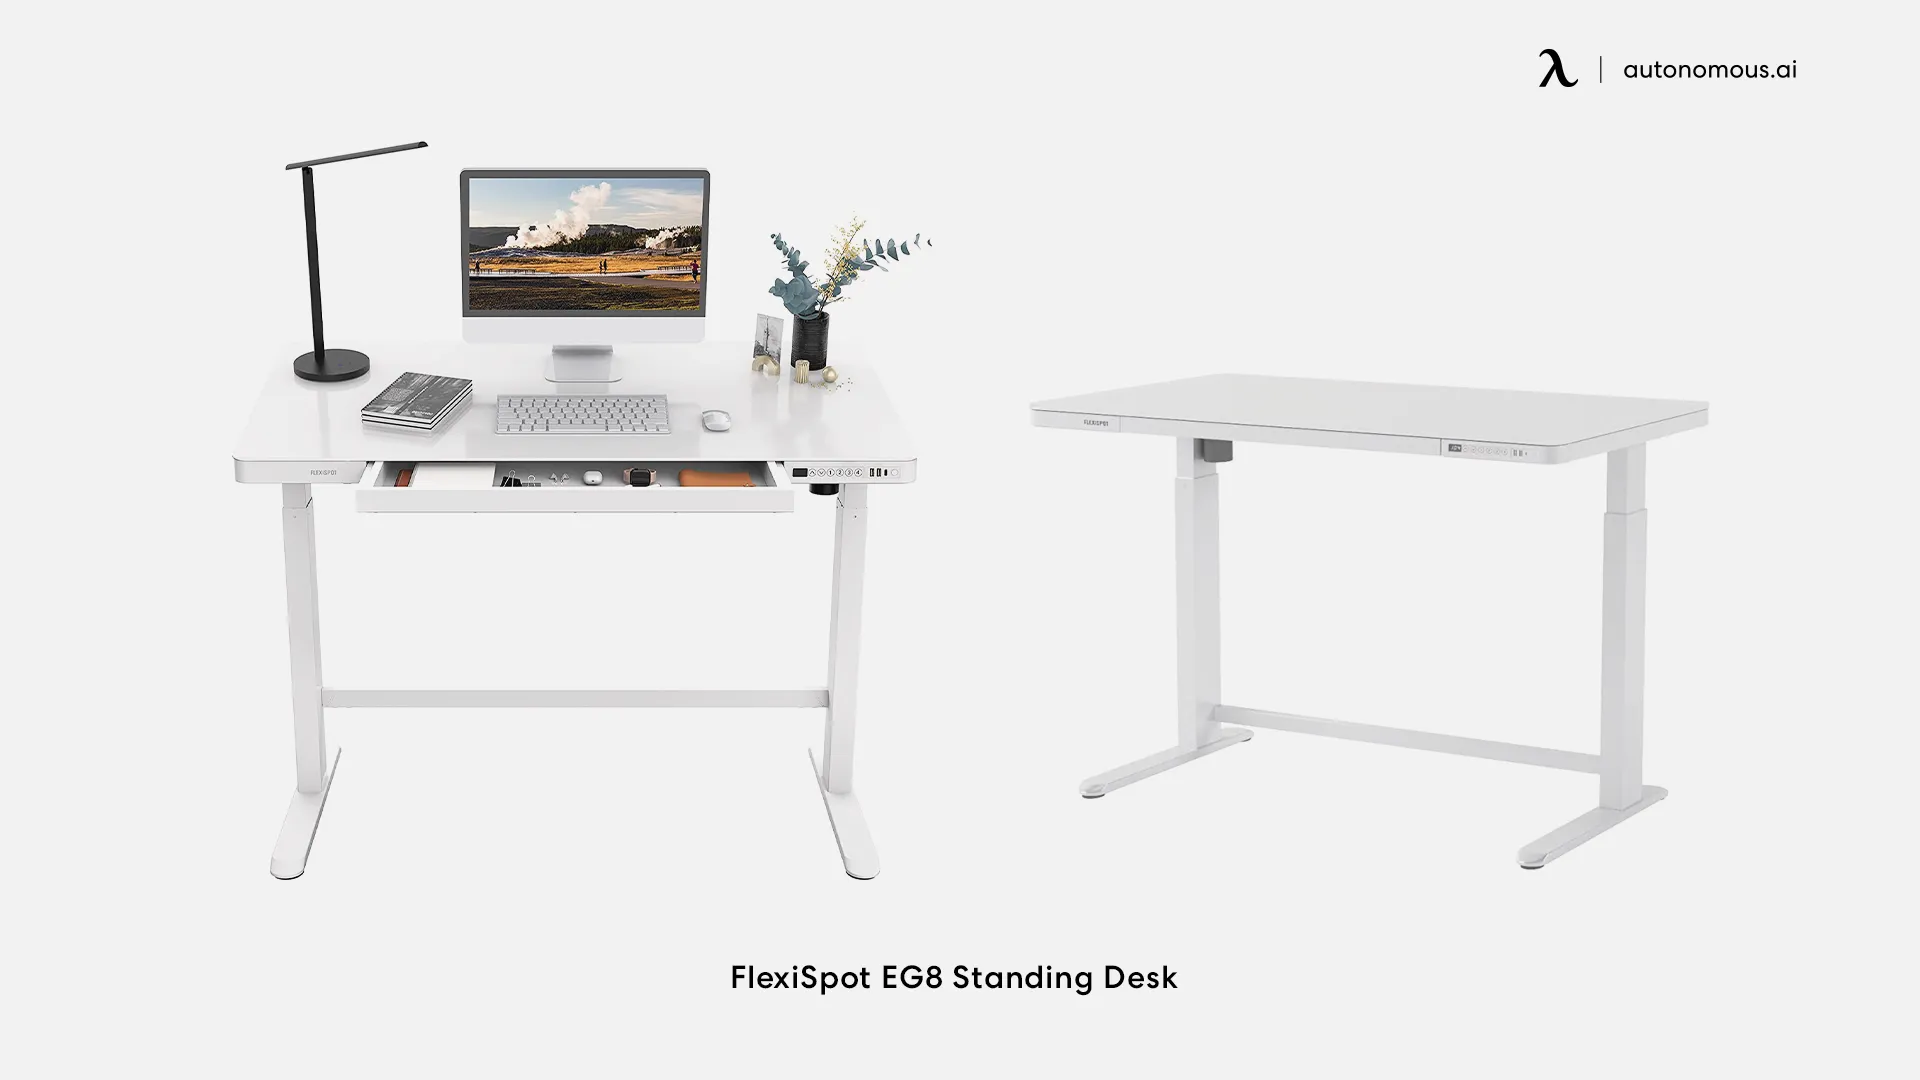 FlexiSpot EG8 Standing Desk